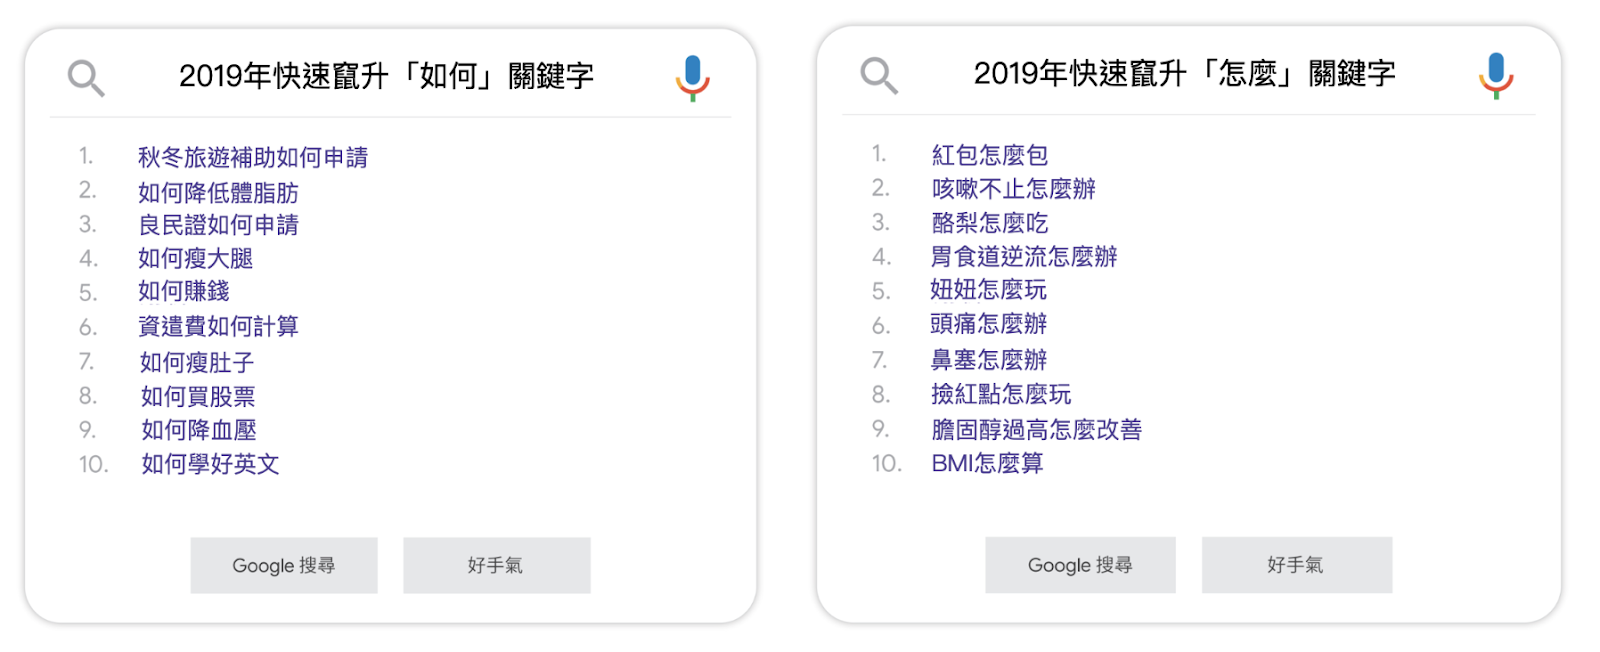 2019 年 Google 台灣搜尋量排行榜出爐 年度關鍵字是『 我們與惡的距離 』其他都在搜什麼呢？